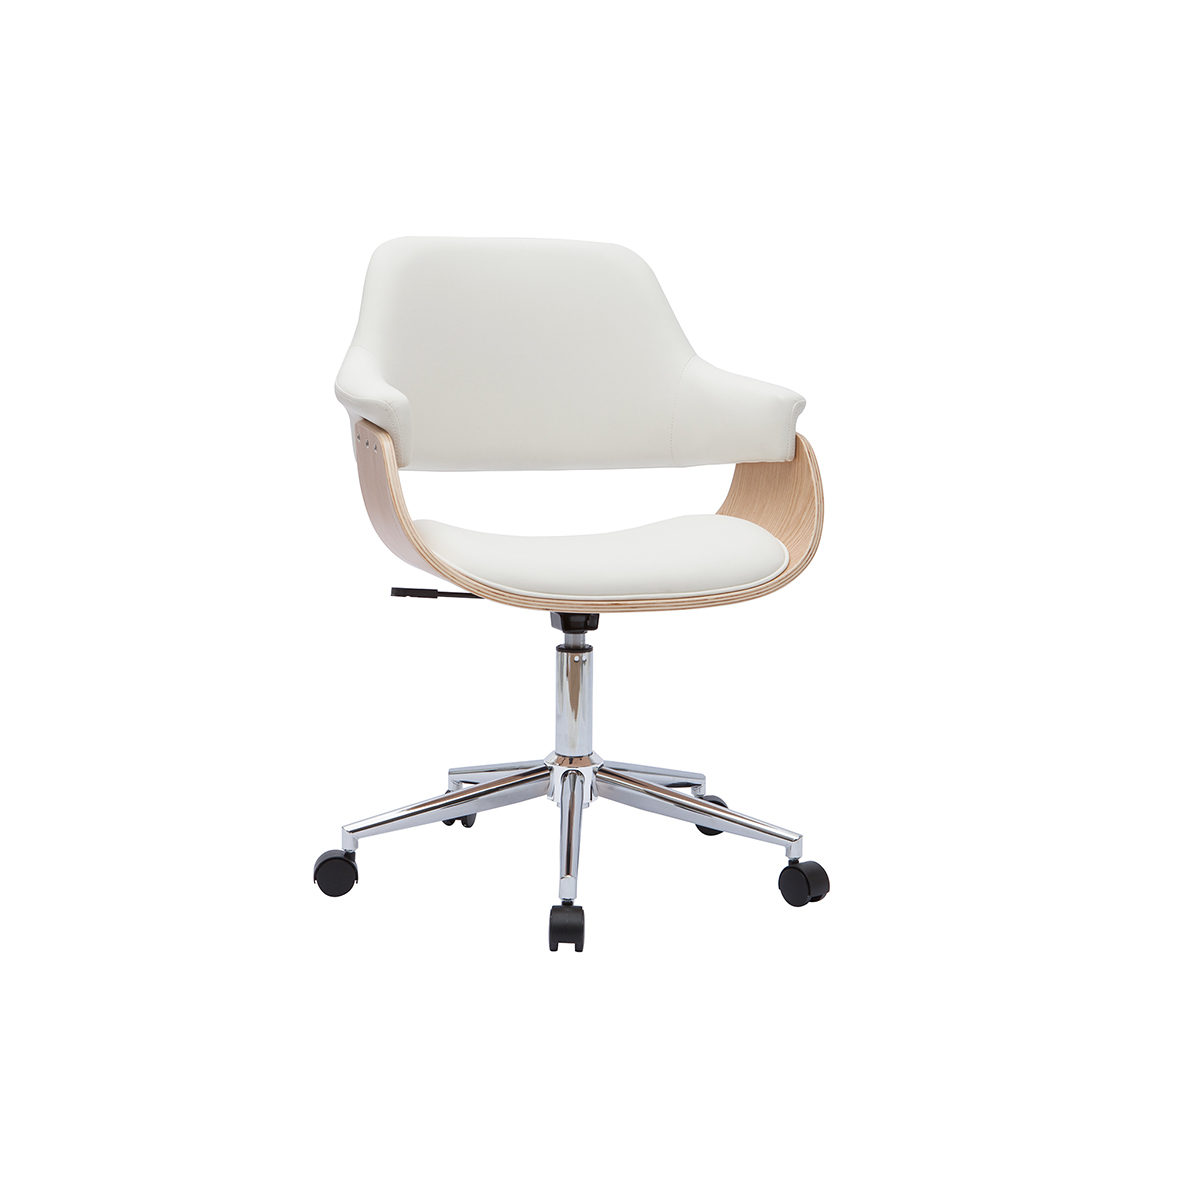 Chaise de bureau à roulettes design blanc, bois clair et acier chromé HANSEN vue1